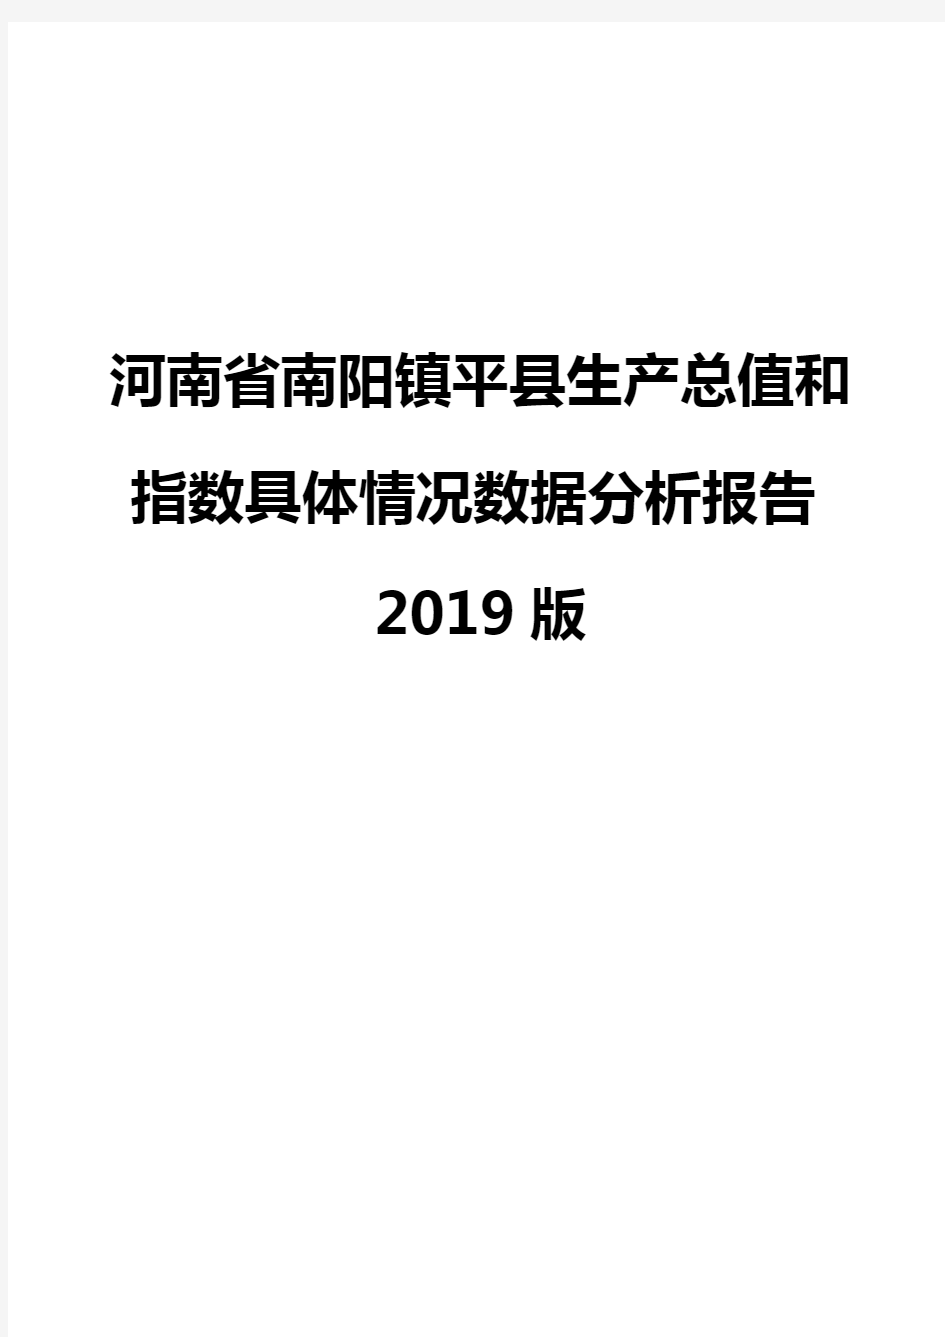 河南省南阳镇平县生产总值和指数具体情况数据分析报告2019版